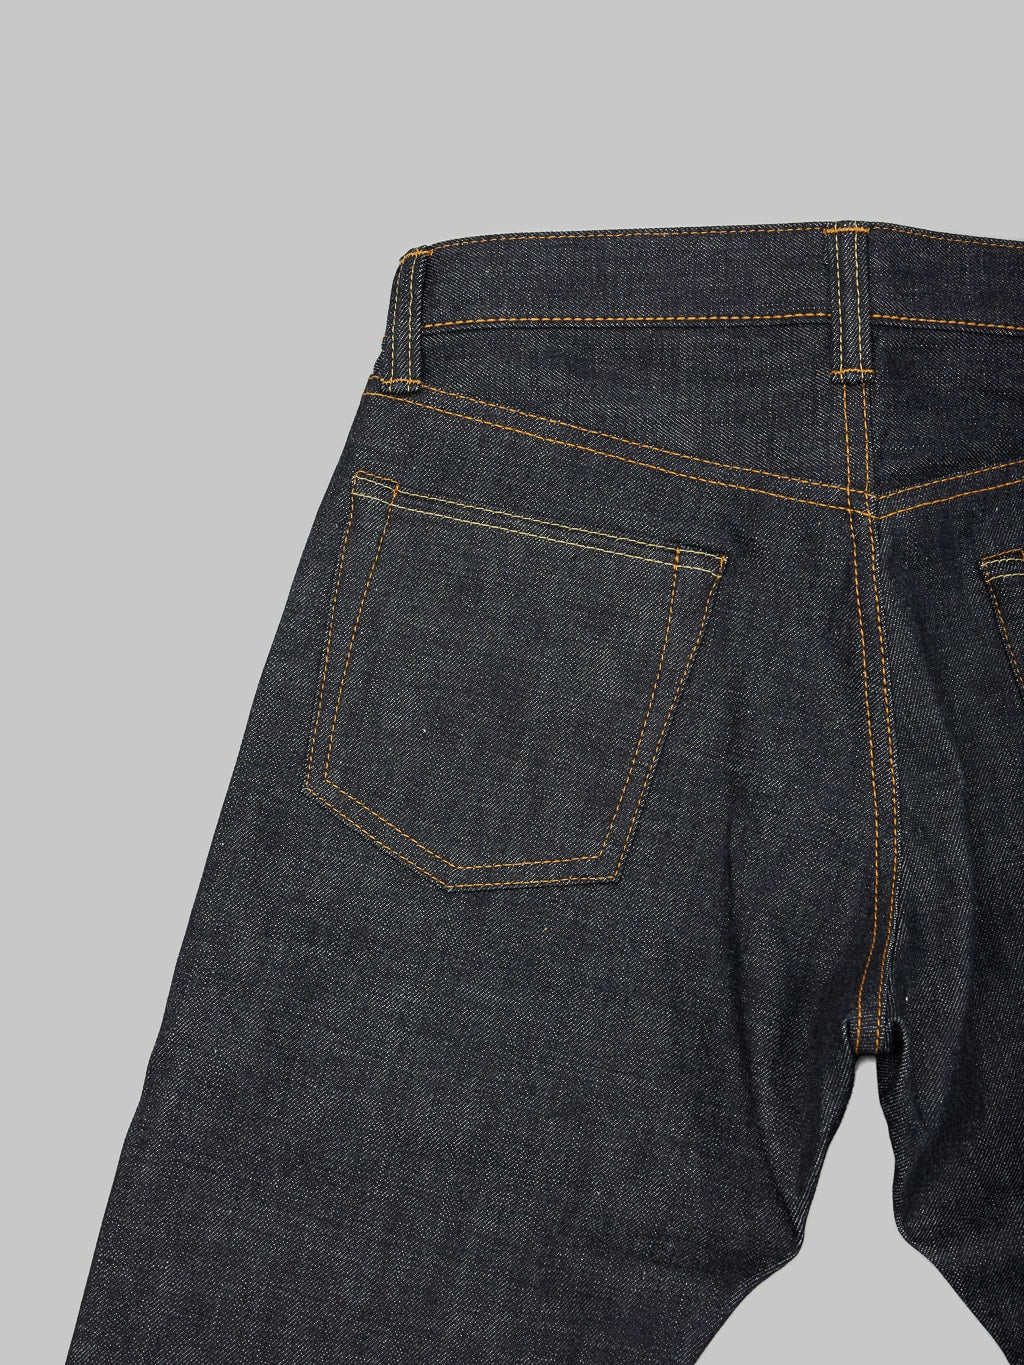 momotaro jeans 0405 v selvedge denim high tapered plain pocket